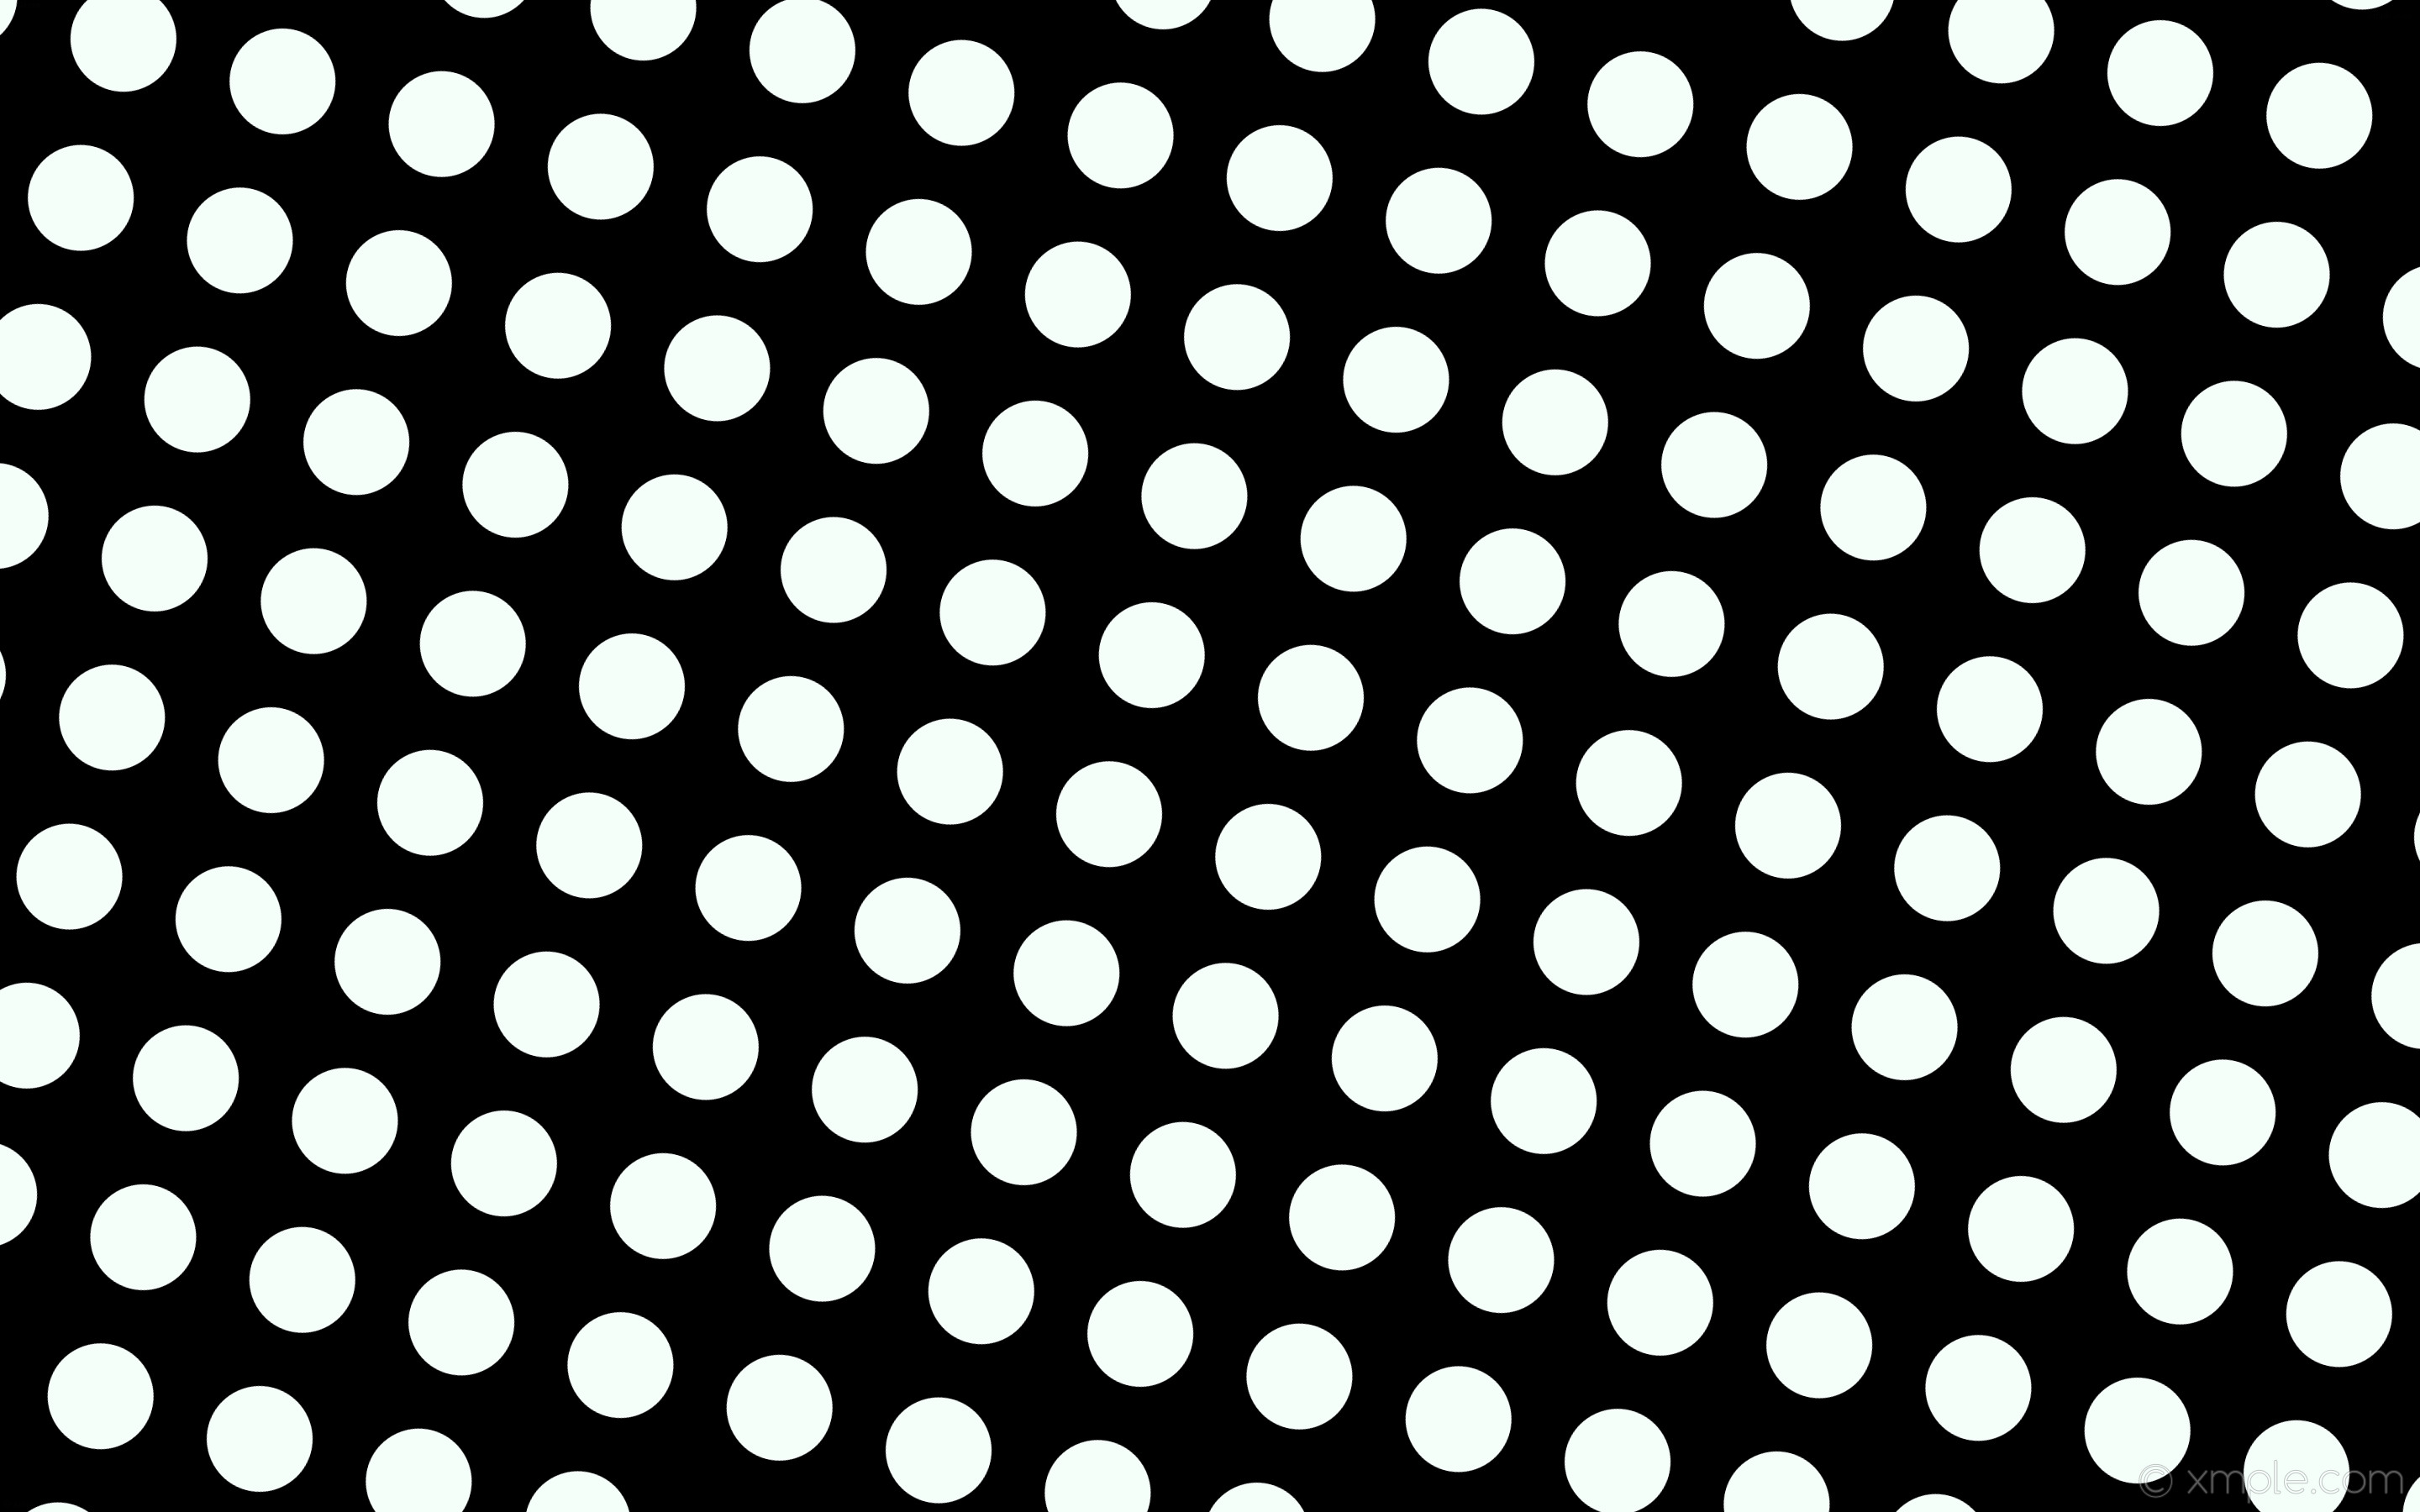 2880x1800 wallpaper white black spots polka dots mint cream #000000 #f5fffa 345Â°  126px 196px